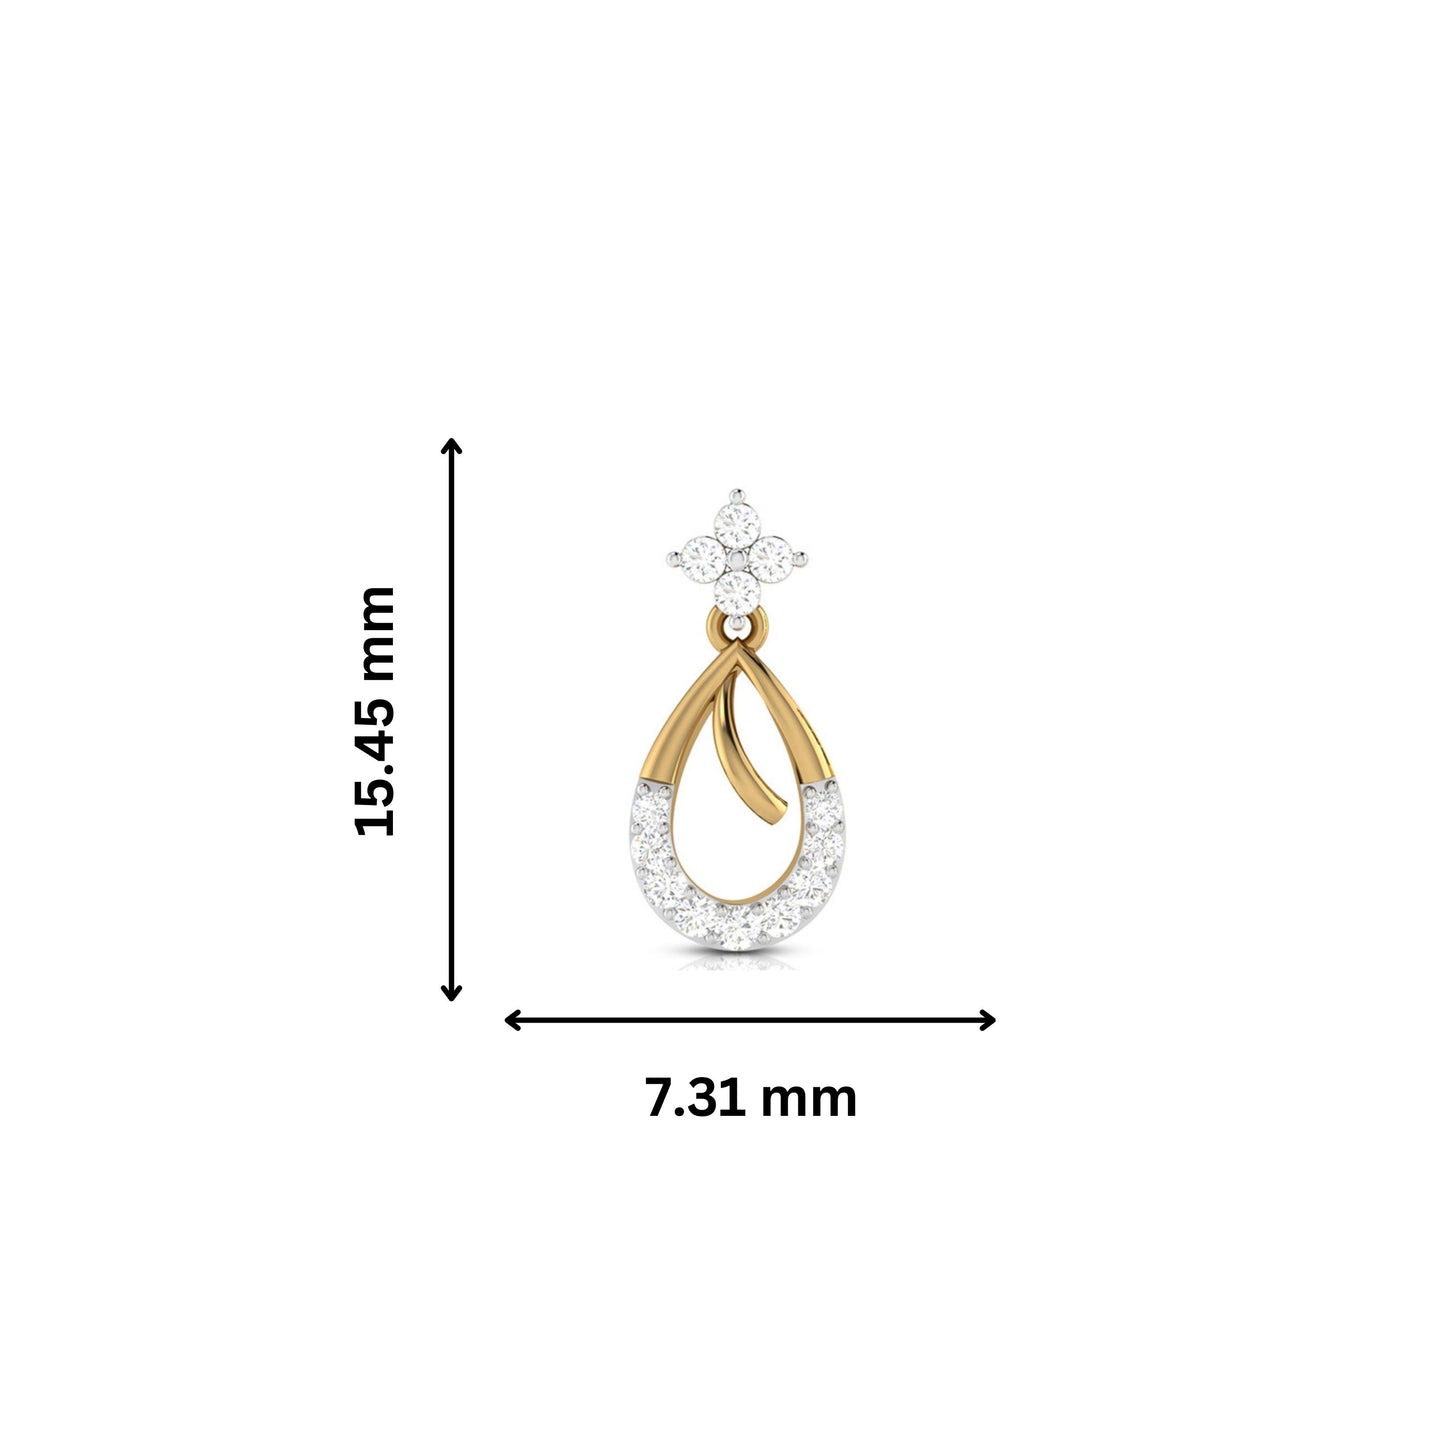 Fancy earrings design Conjecture Lab Grown Diamond Earrings Fiona Diamonds